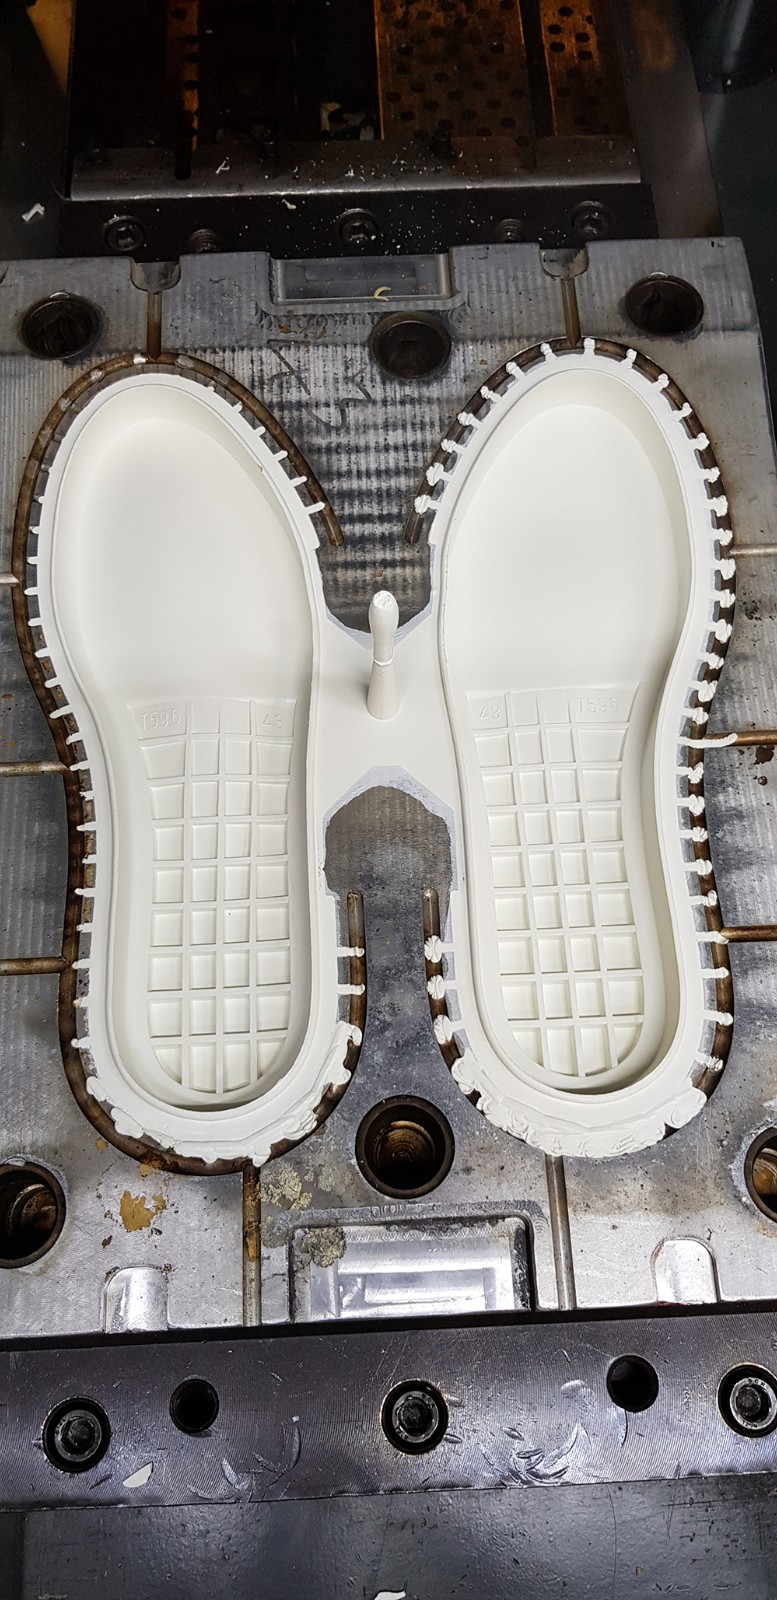 橡膠鞋底機對于企業的發展有什么影響嗎？